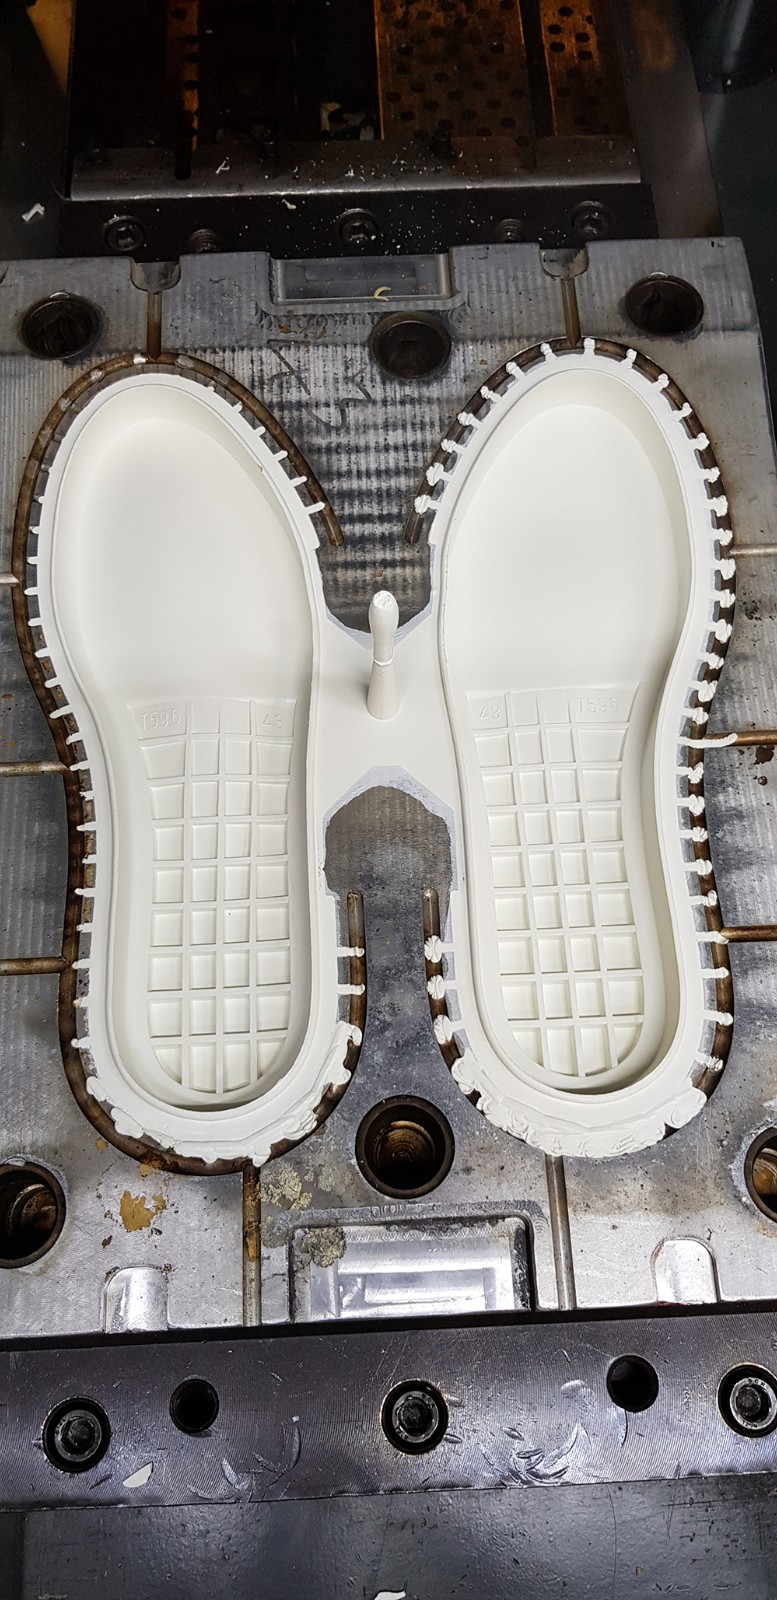 橡膠鞋底機對于企業的發展有什么影響嗎？